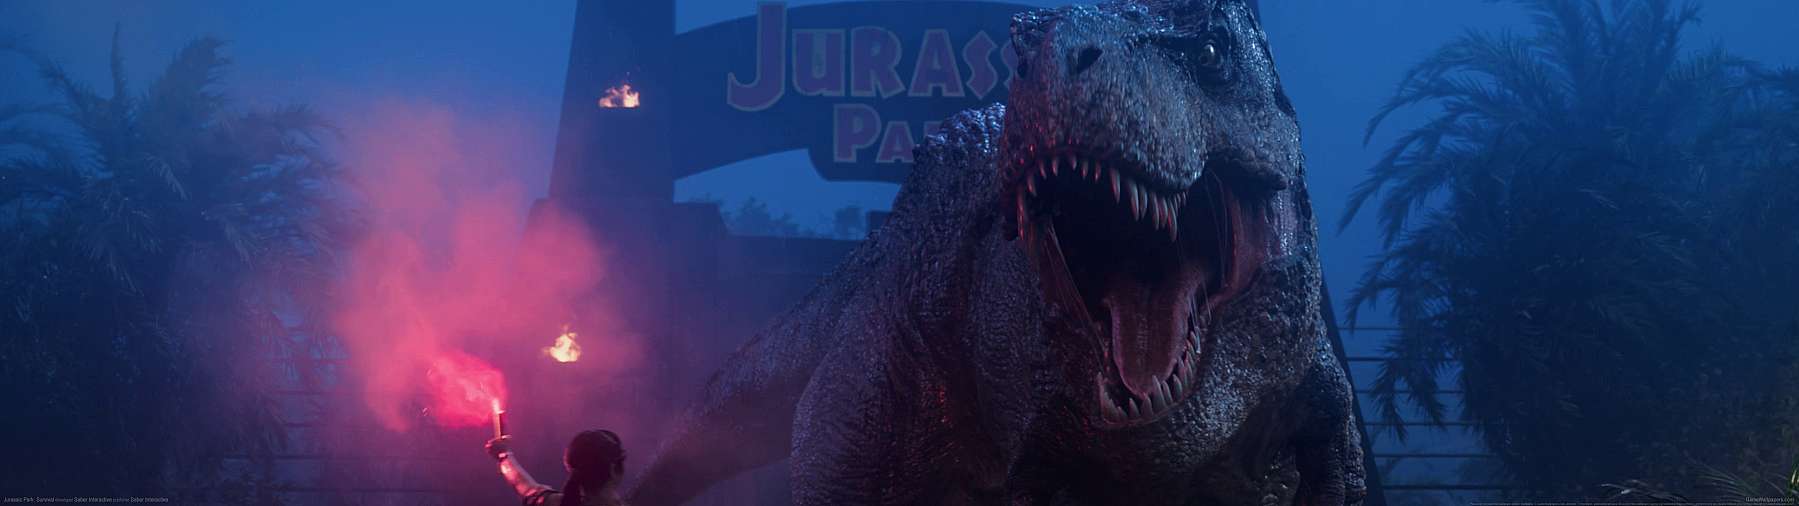 Jurassic Park: Survival superwide fondo de escritorio 01